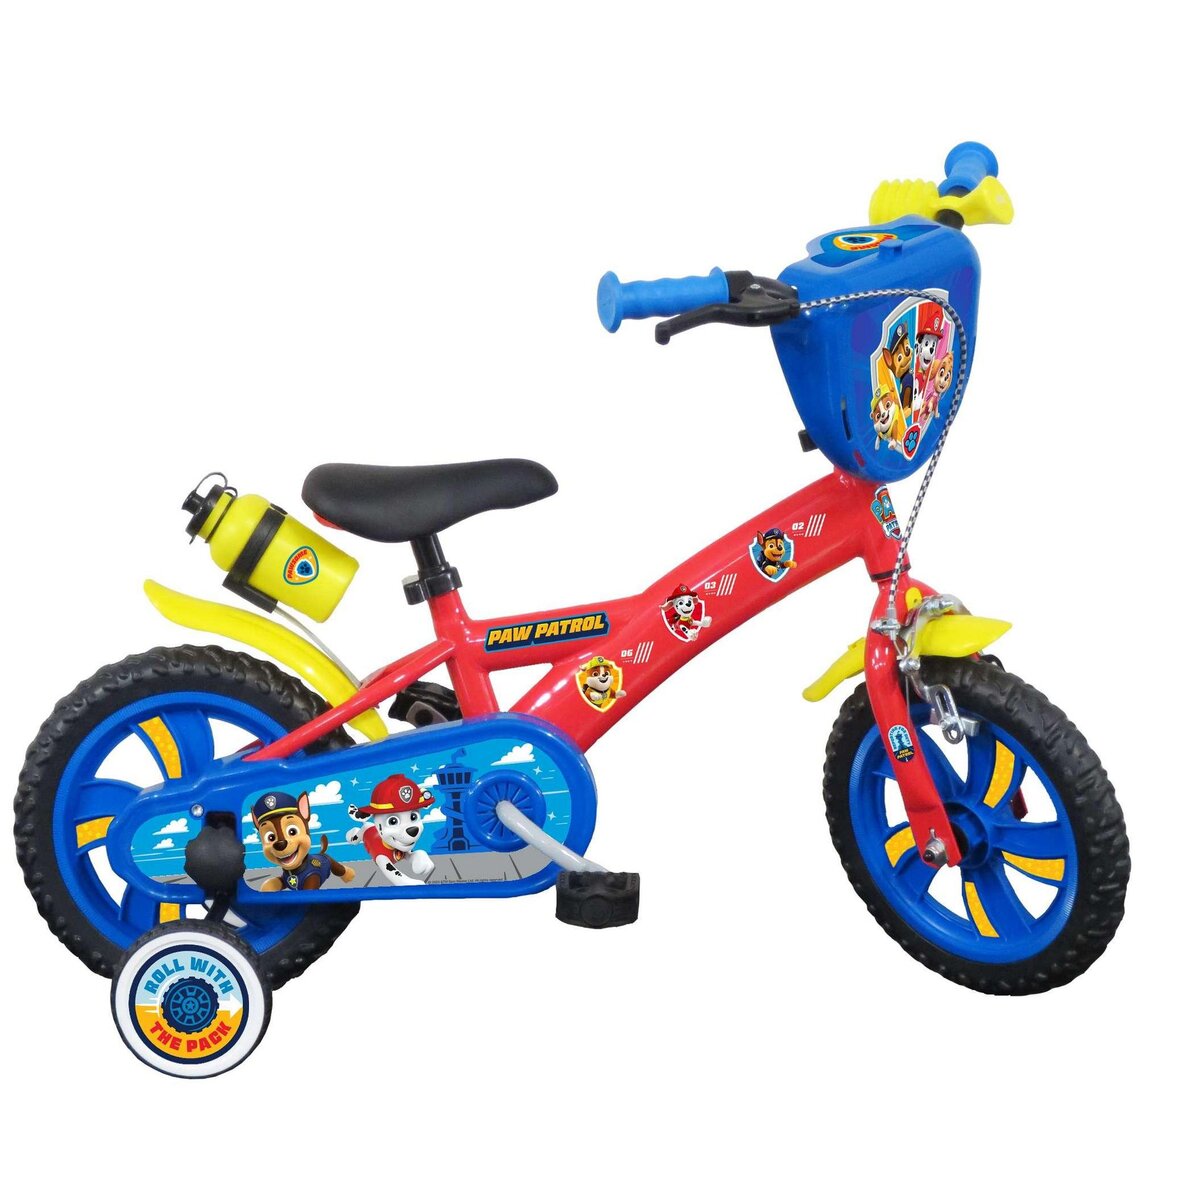 Nickelodeon Vélo 12 Garçon Licence Pat Patrouille pour enfant de 3 à 5 ans  avec stabilisateurs à molettes - 2 freins pas cher 